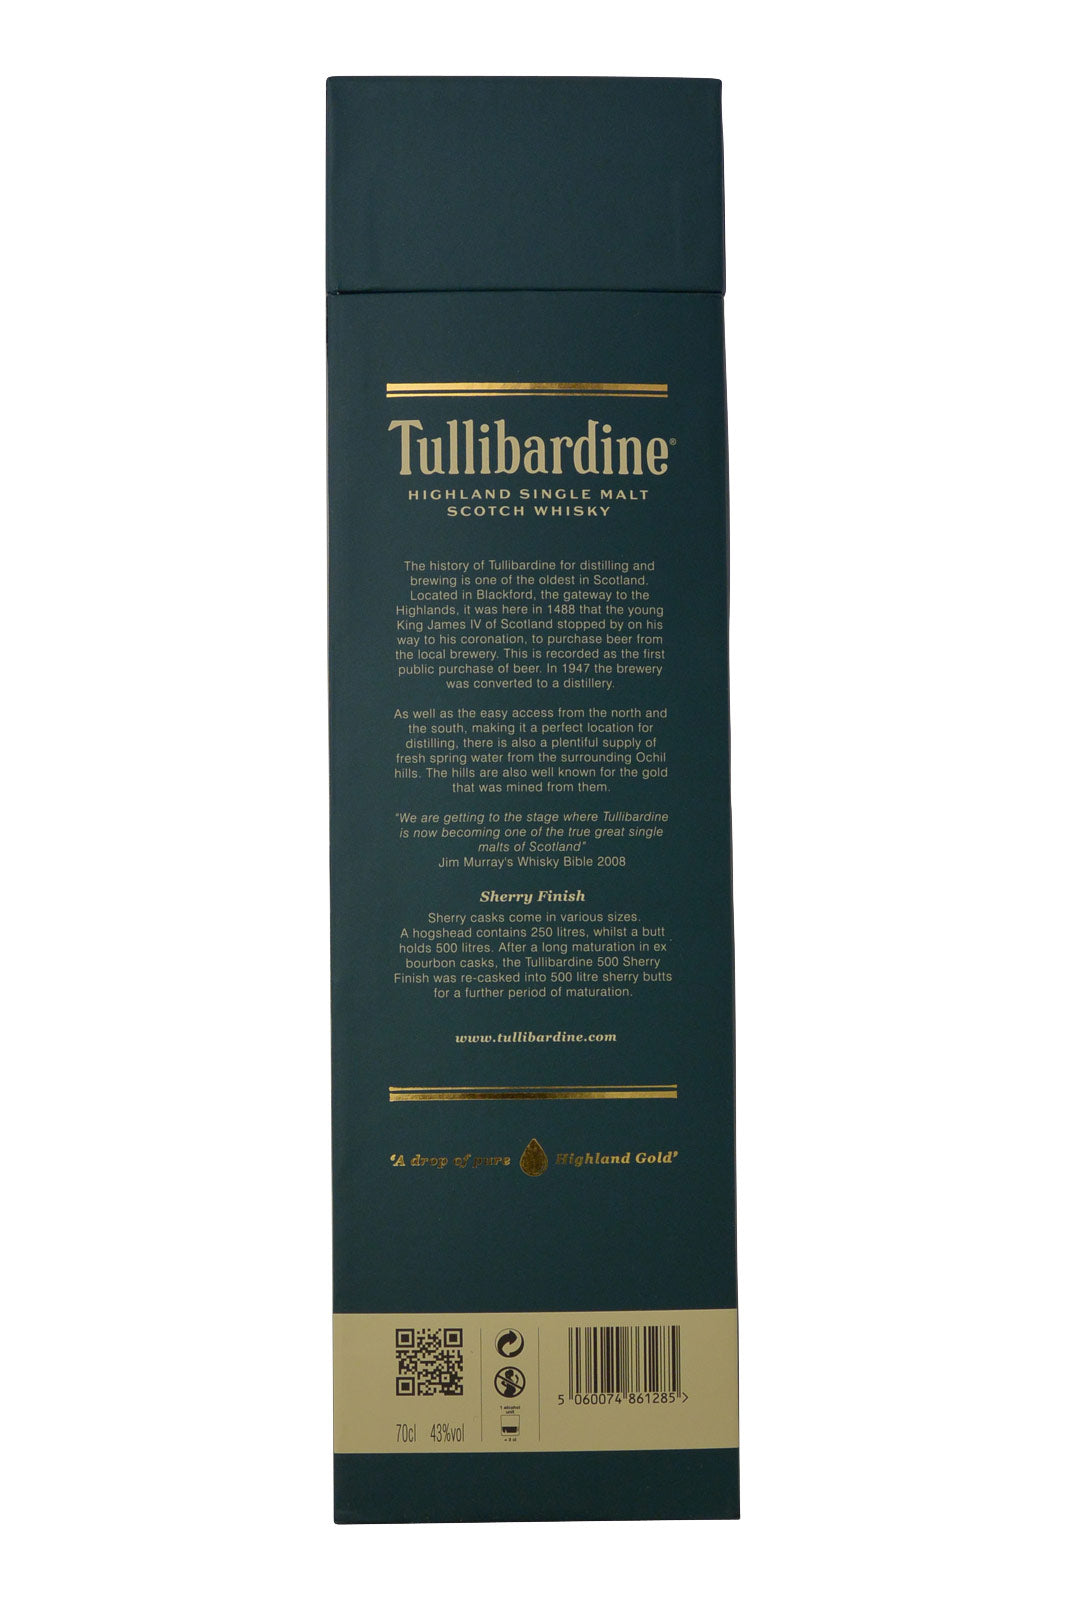 Tullibardine 500 Sherry Finish